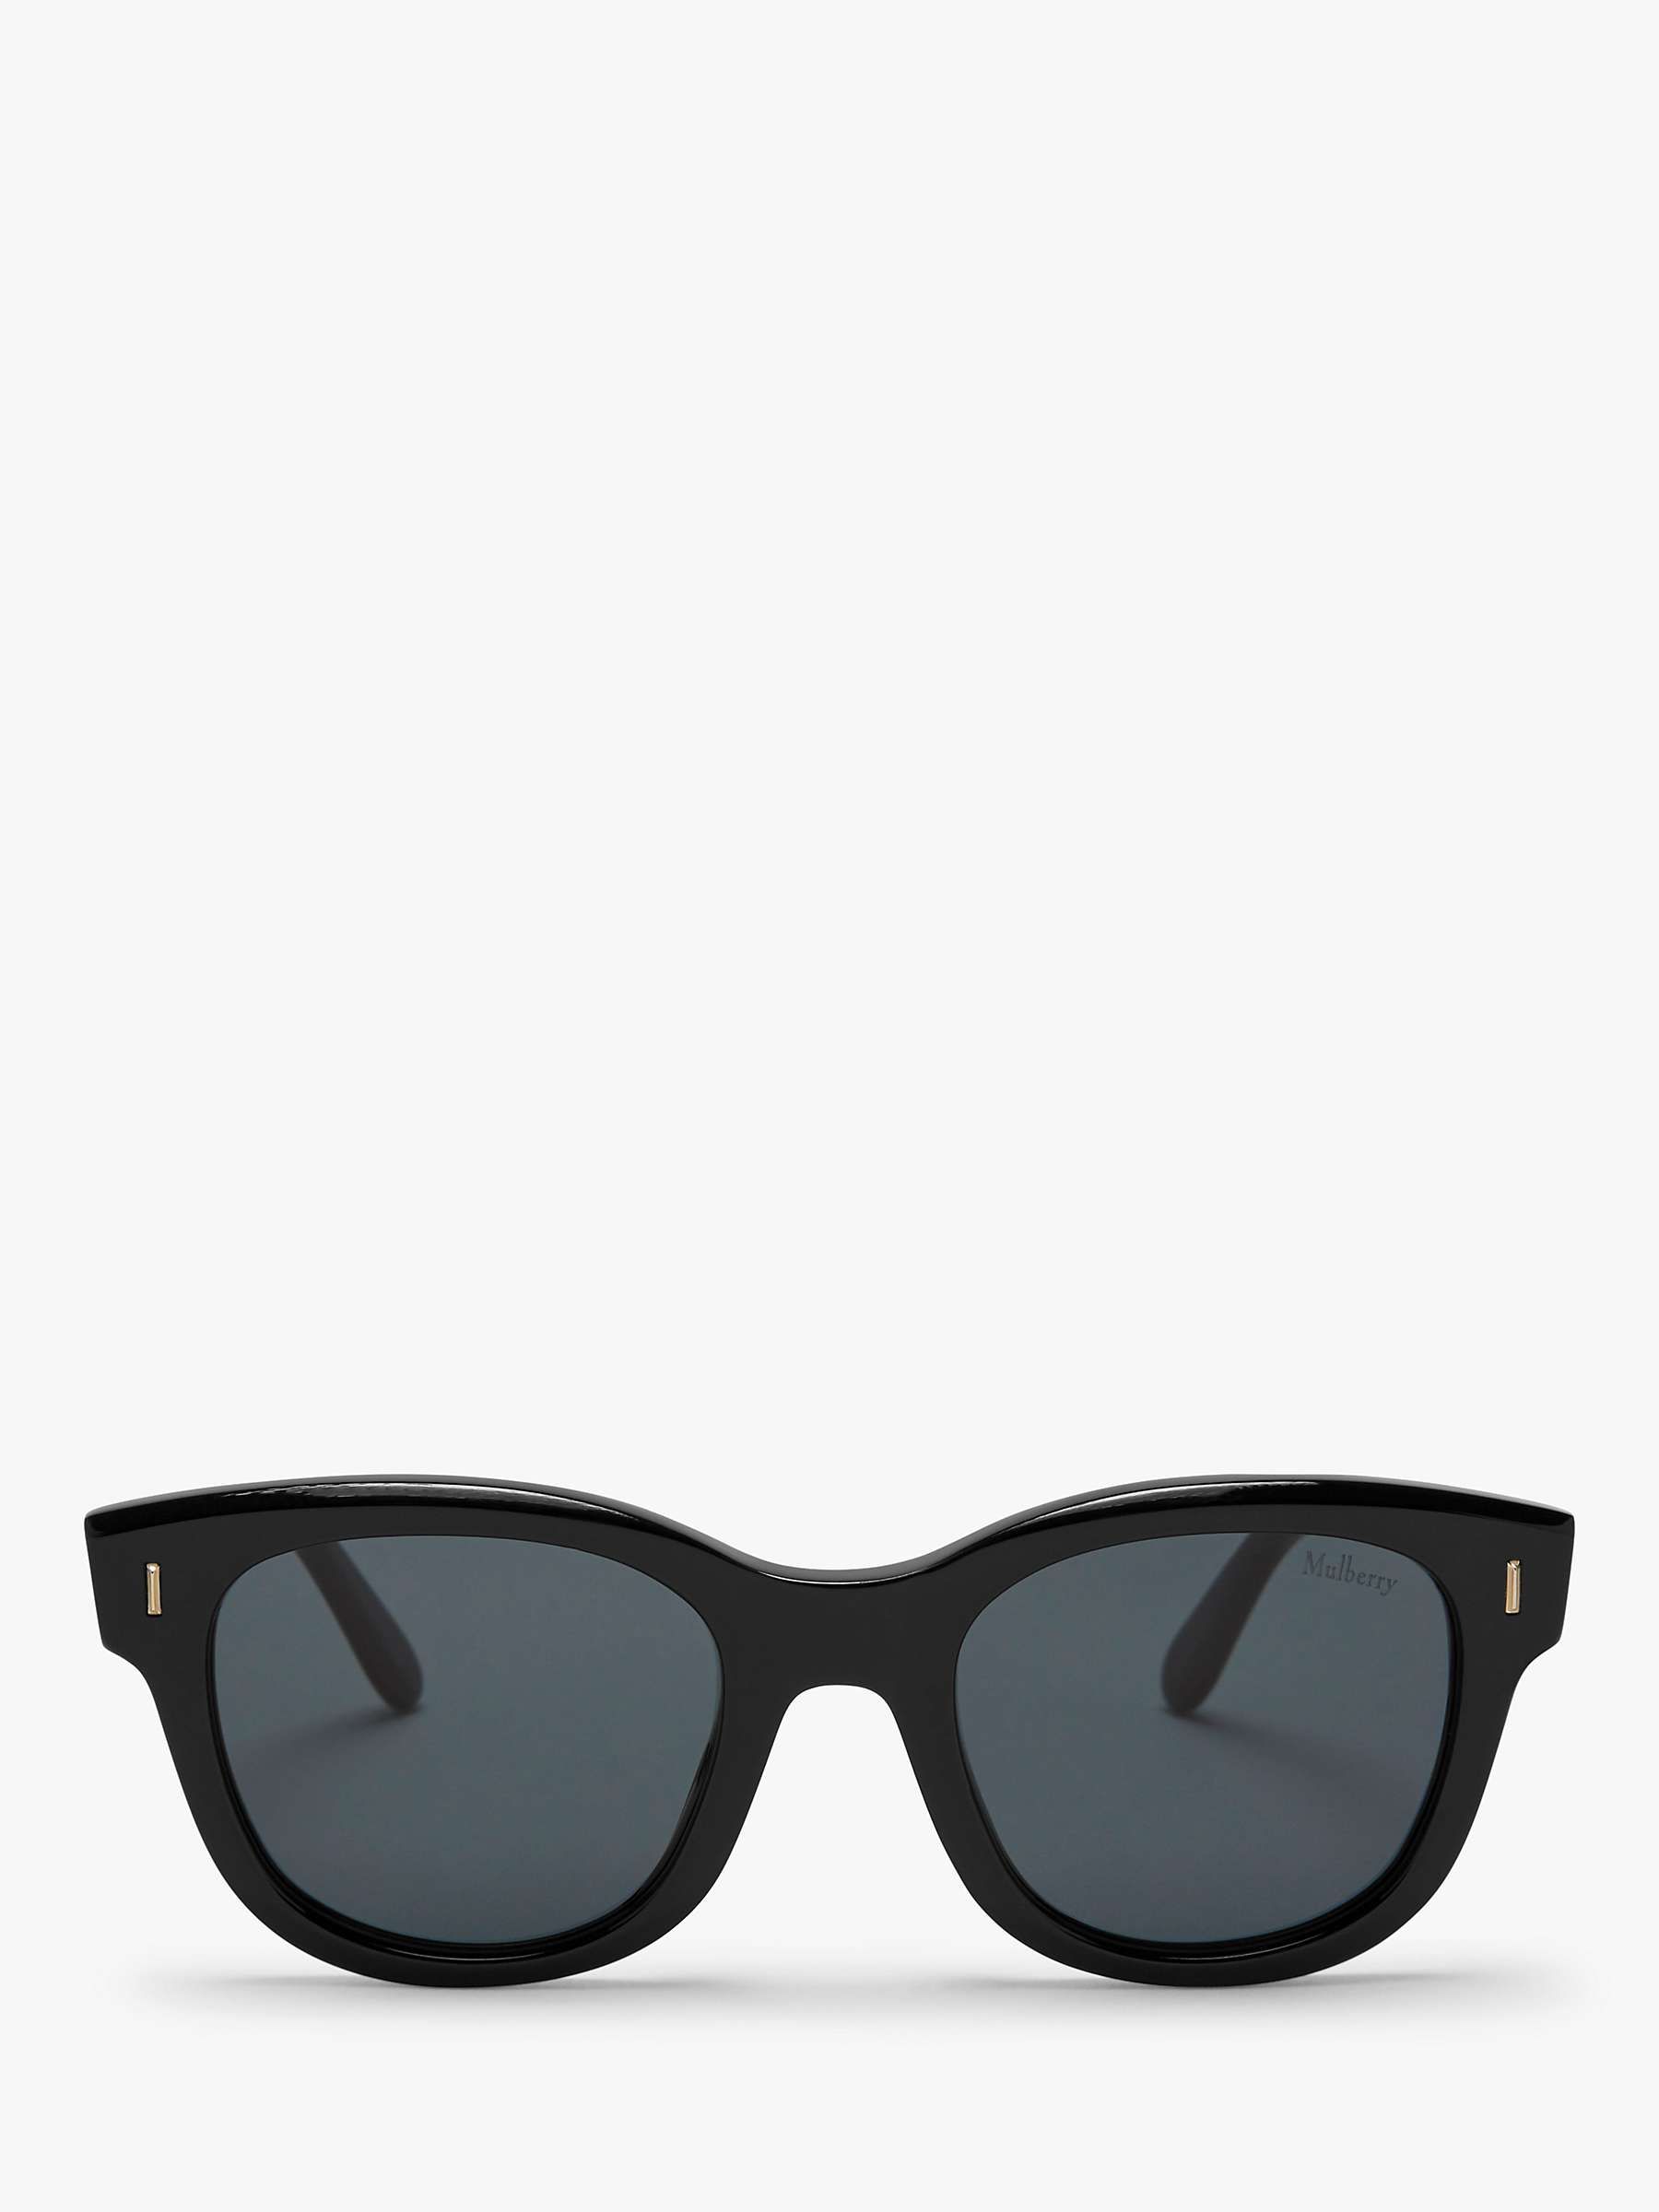 Mulberry Women's Jane D-Frame Sunglasses, Black | John Lewis UK